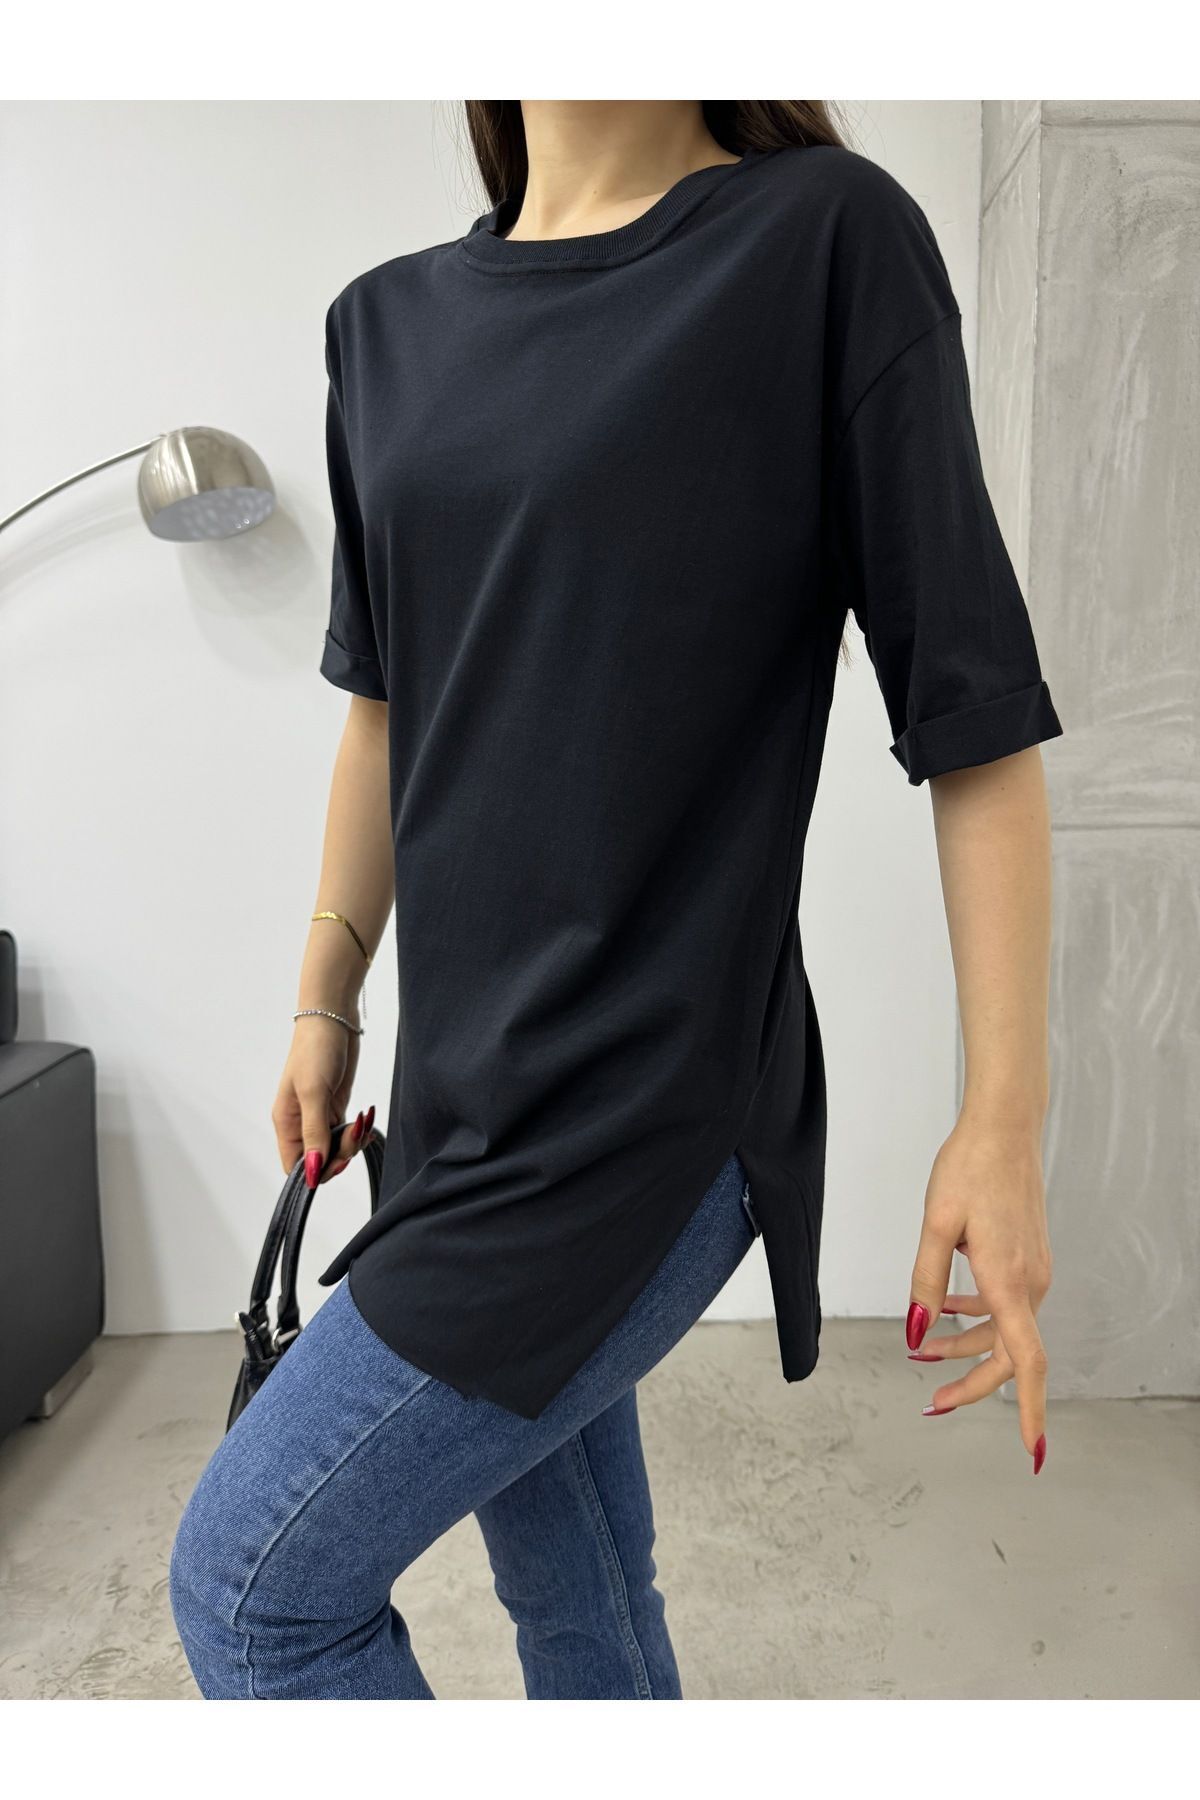 BİKELİFE Kadın Oversize Lazer Kesim Yan Yırtmaçlı T-shirt